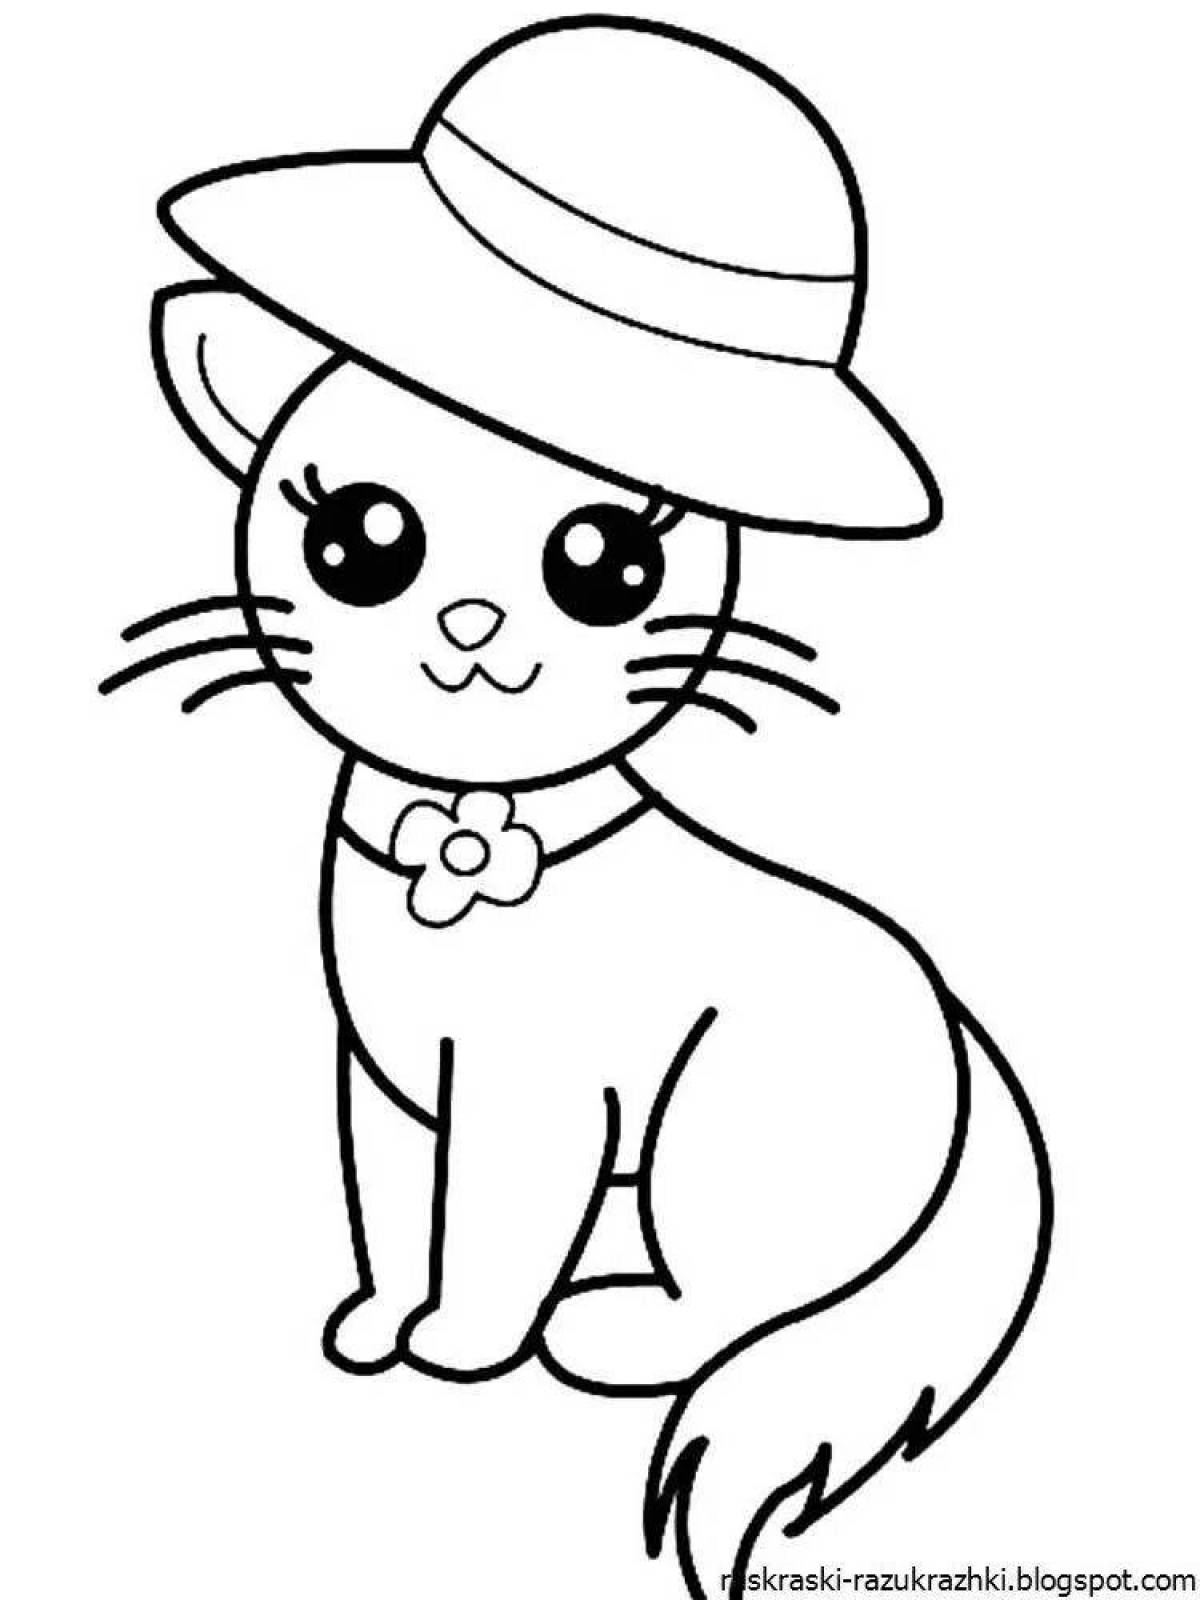 Яркая кошка-раскраска для детей 3-4 лет